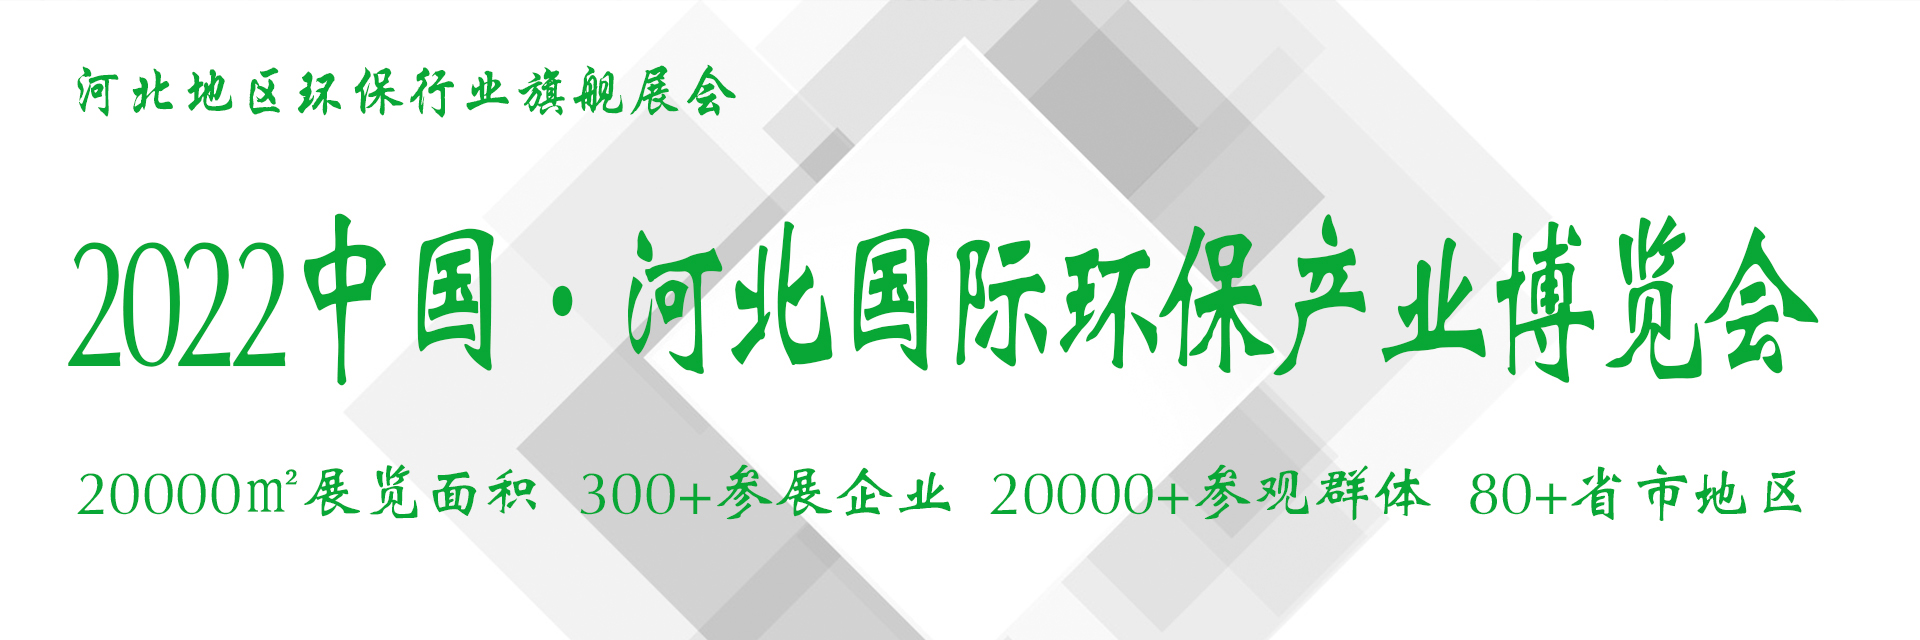 河北中科环保有限公司将隆重出席11月25-27日中国河北环保产业博览会